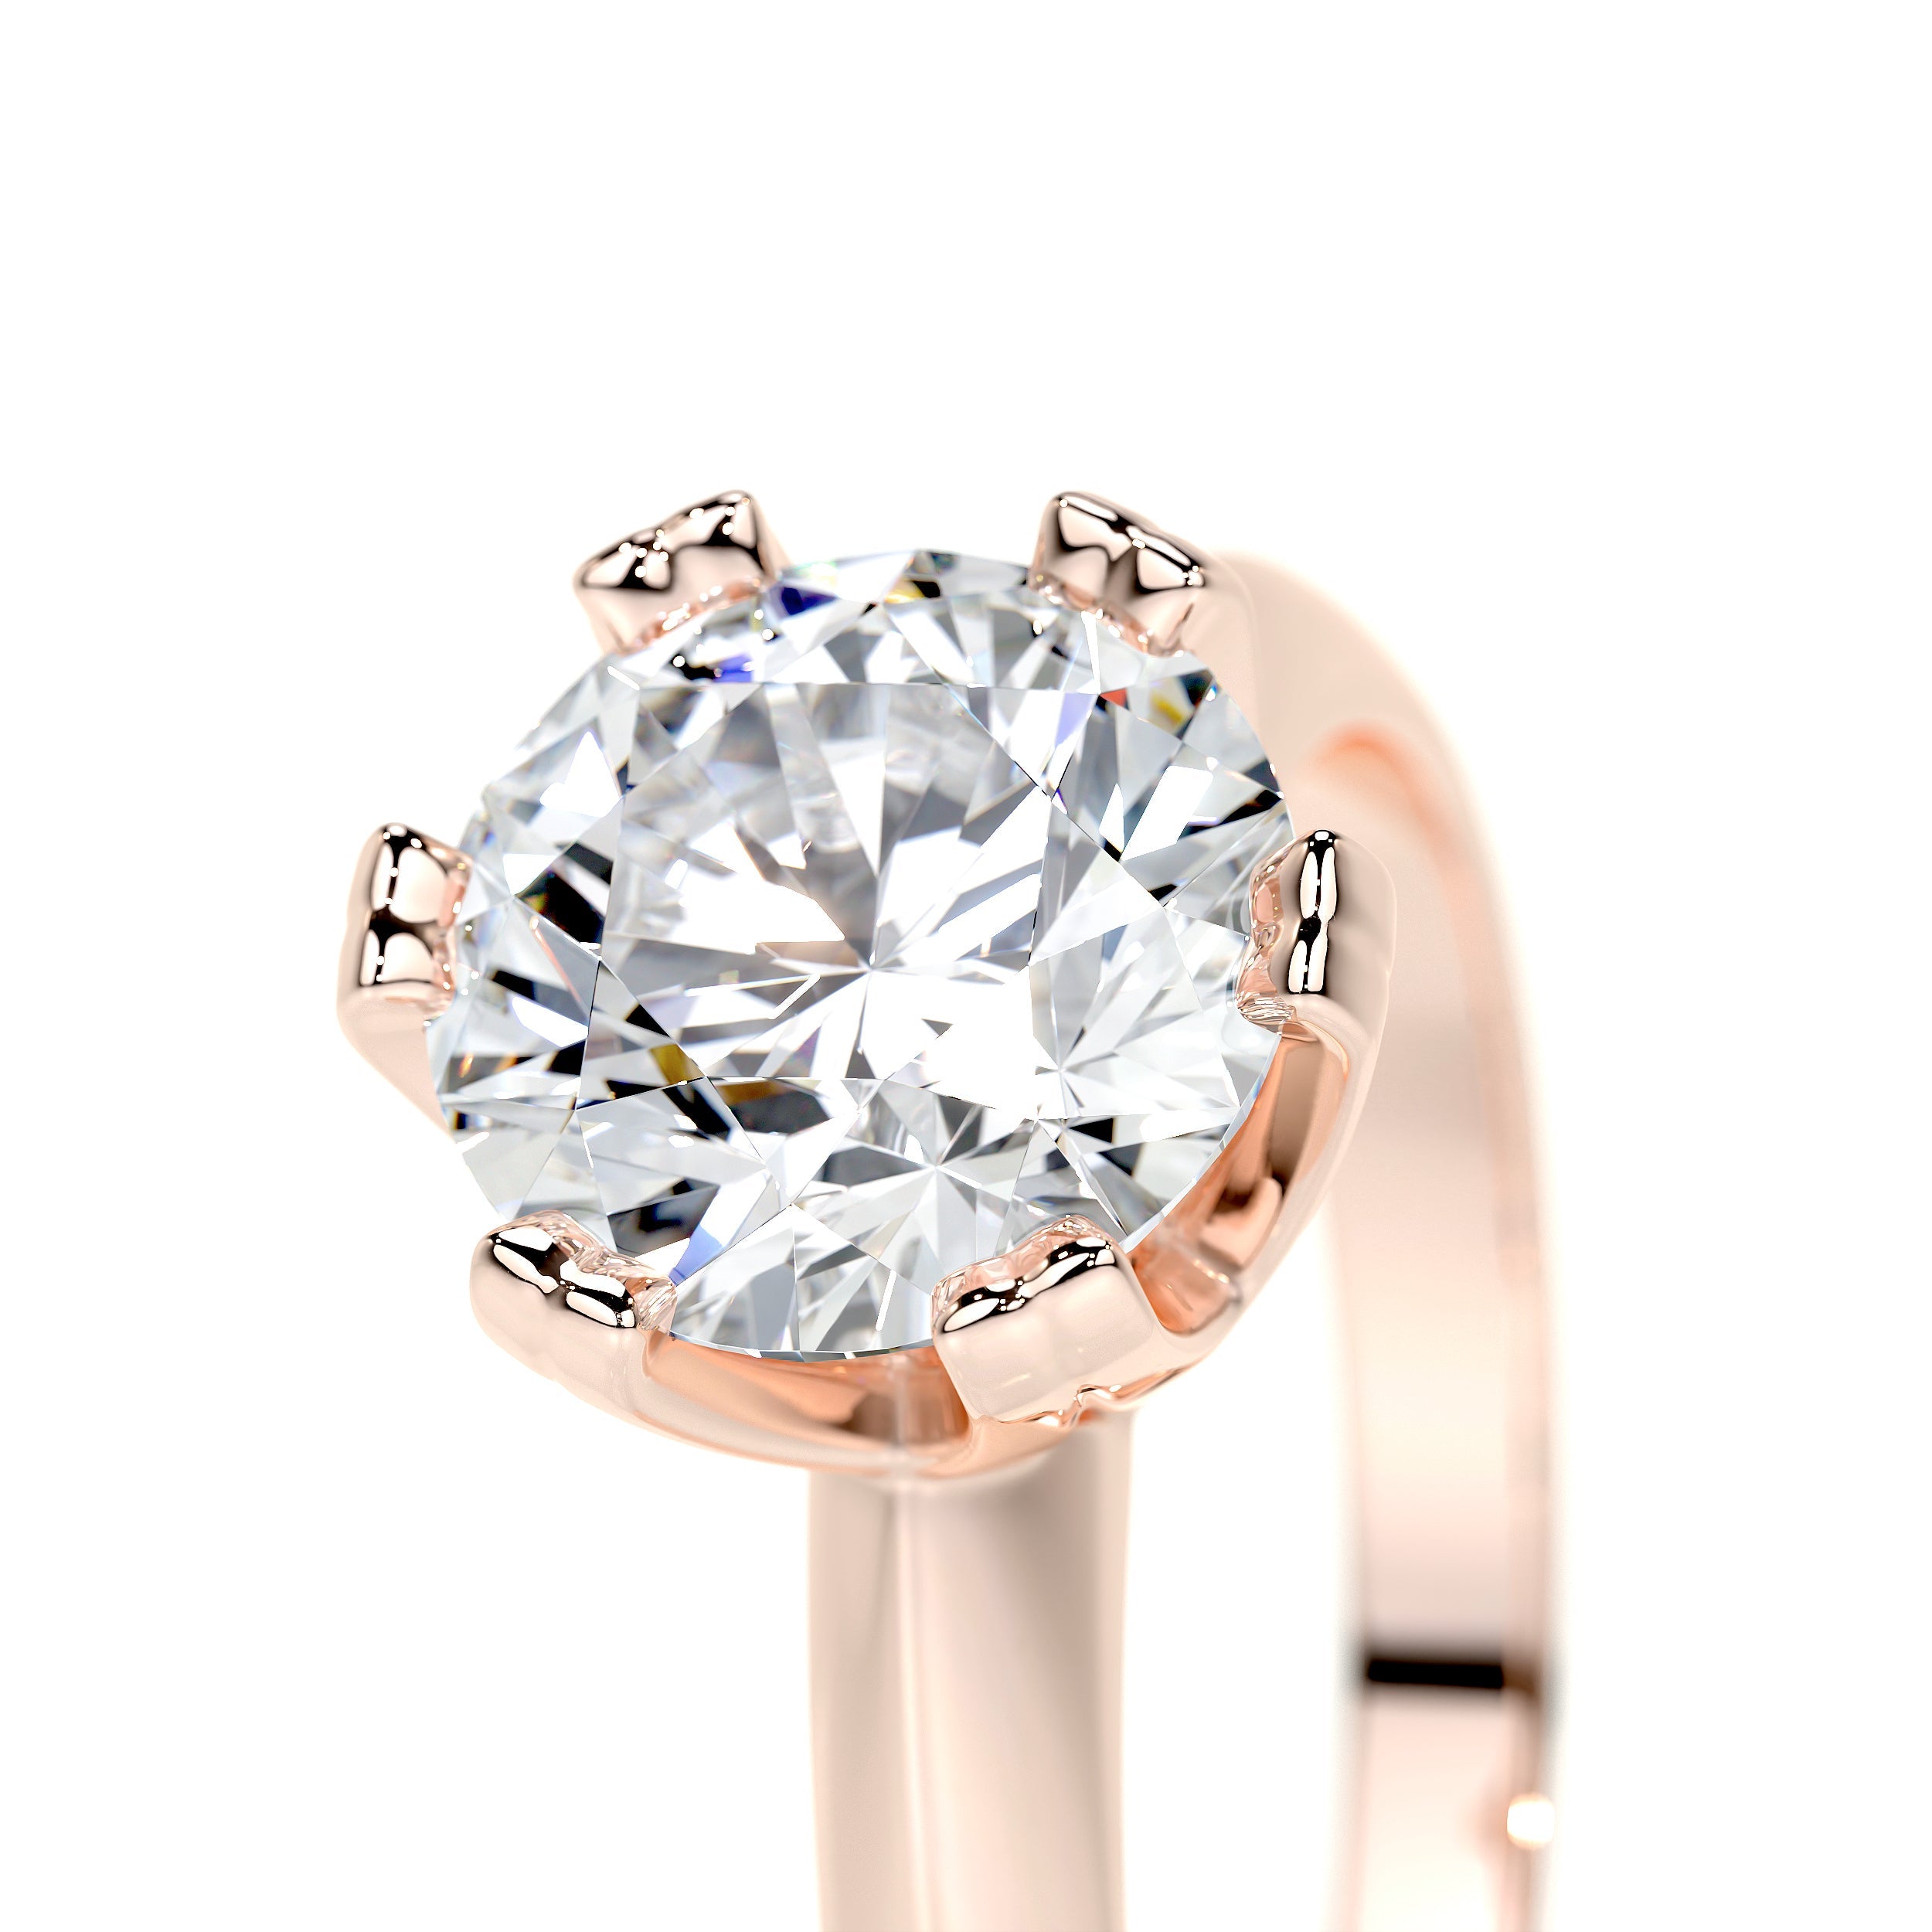 Alexis Lab Grown Diamond Ring   (1.5 Carat) -14K Rose Gold